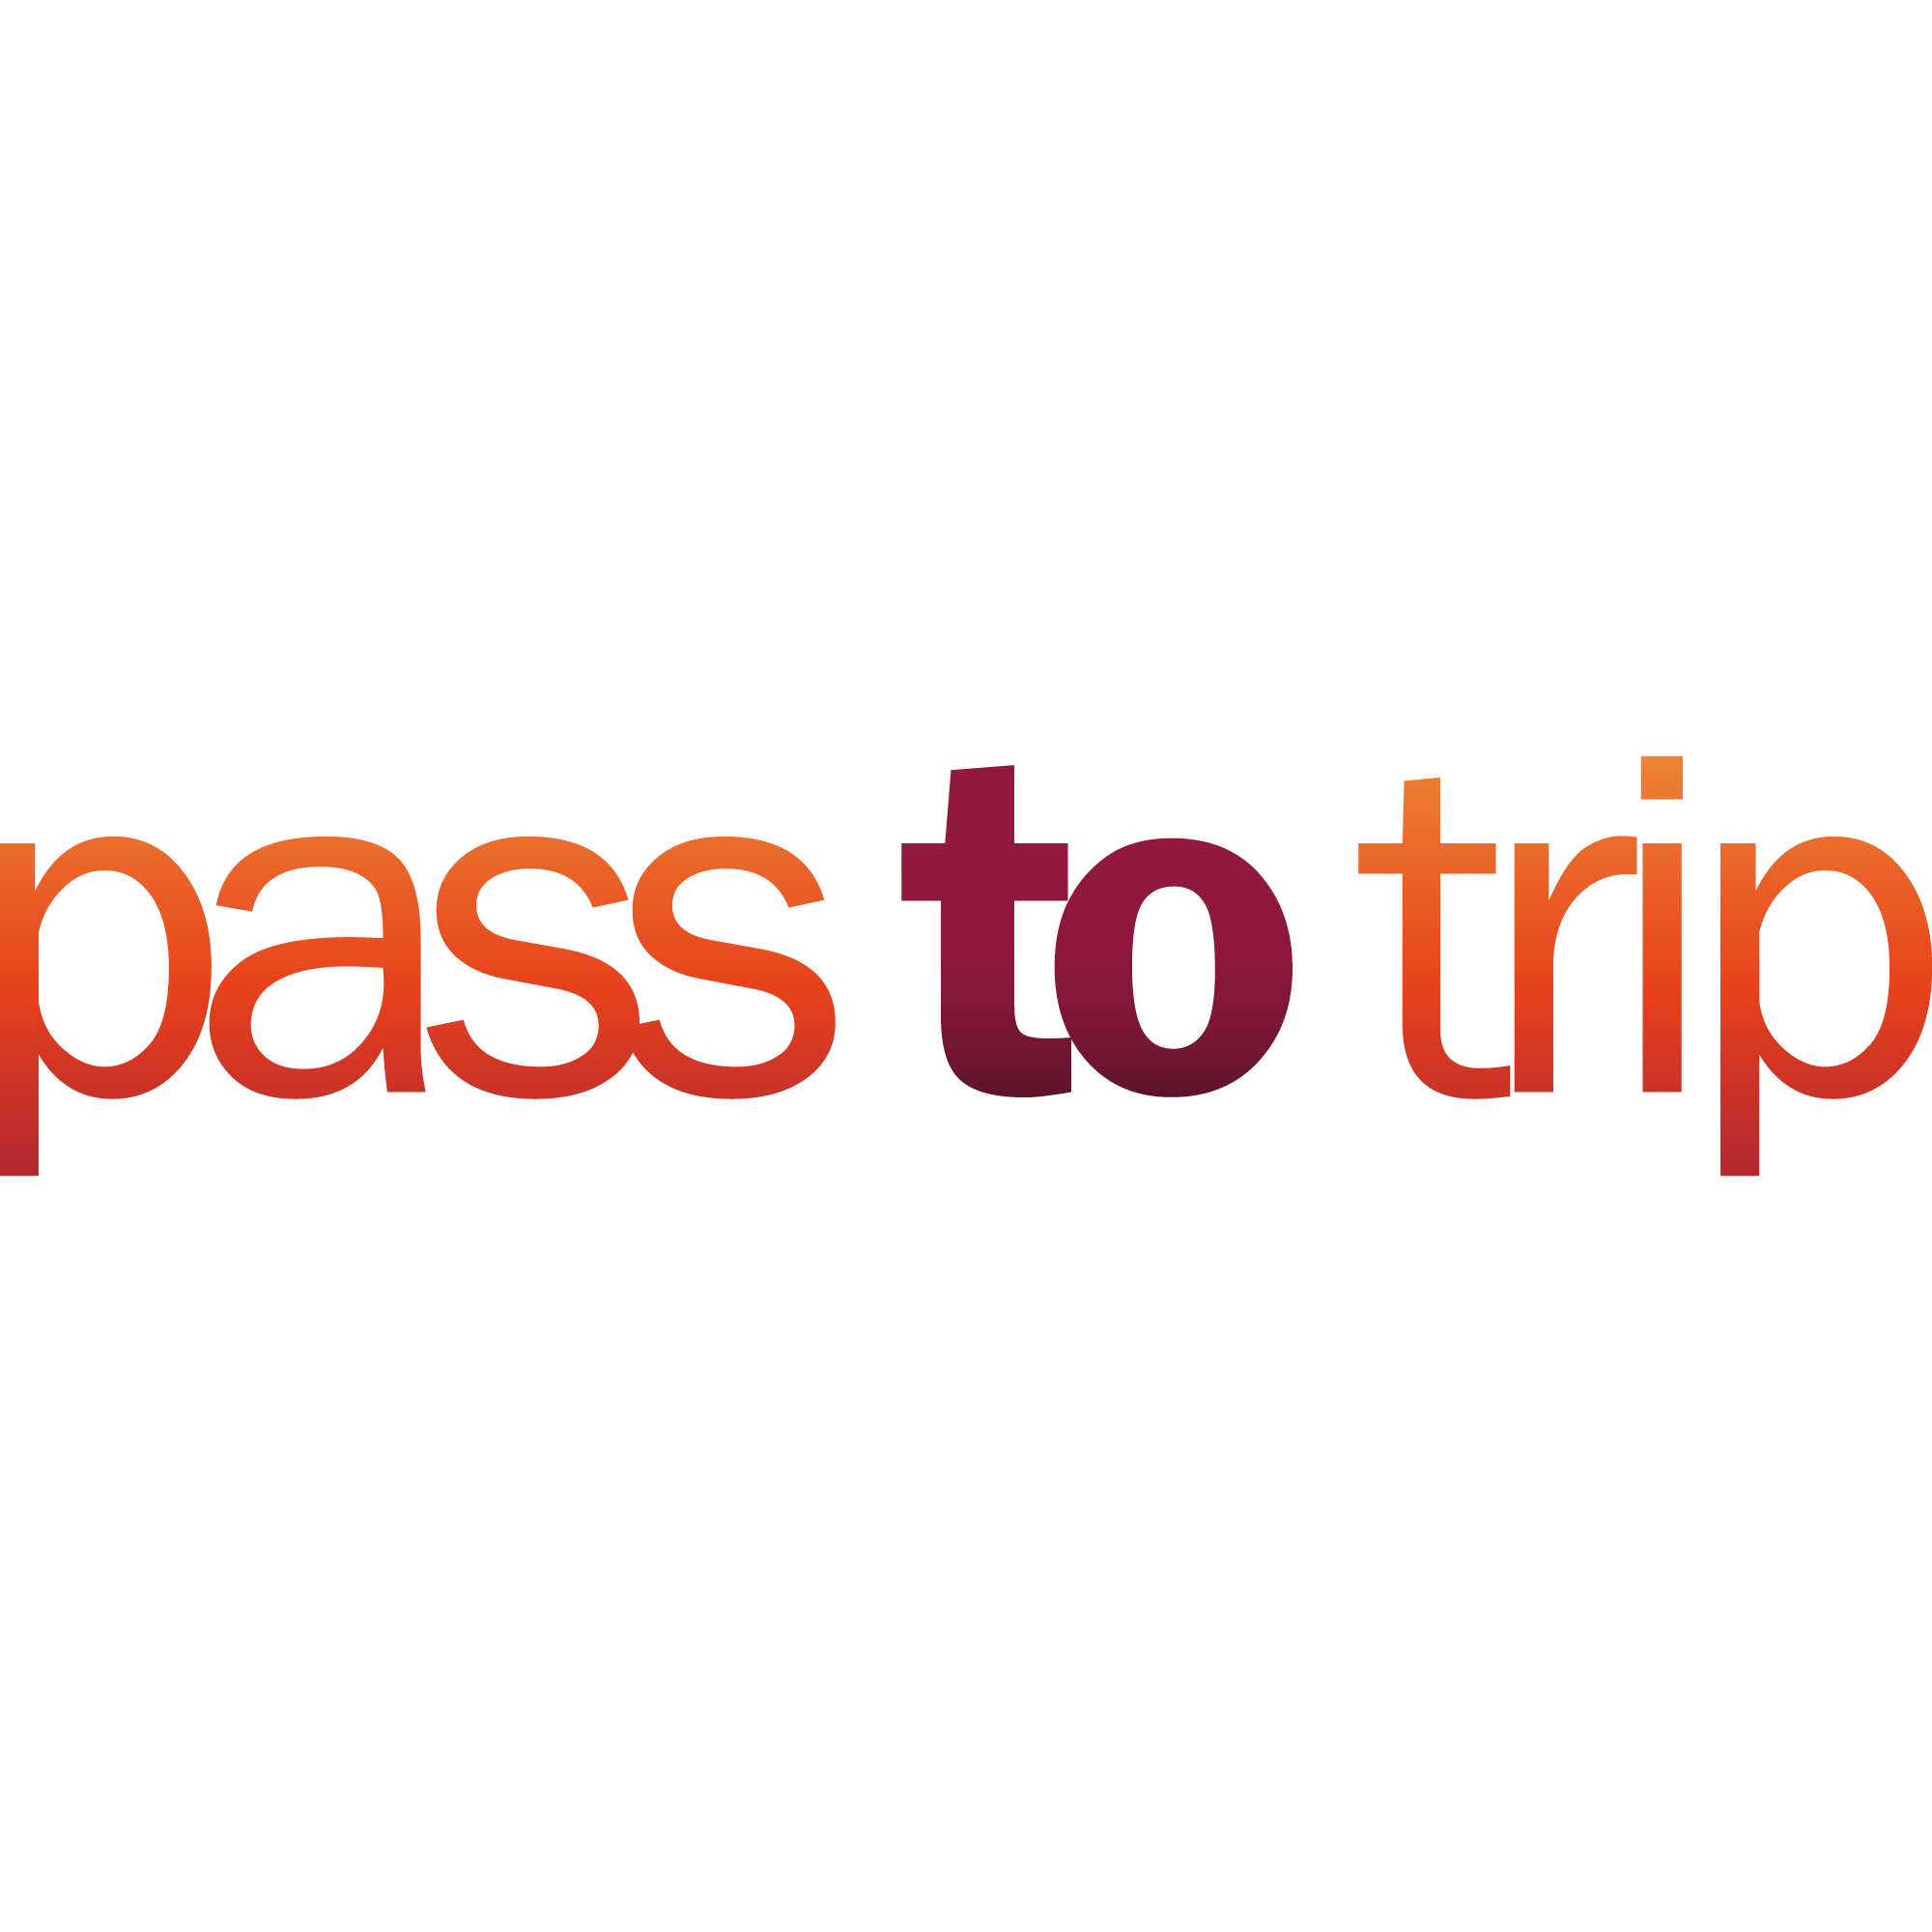 pass to trip typo